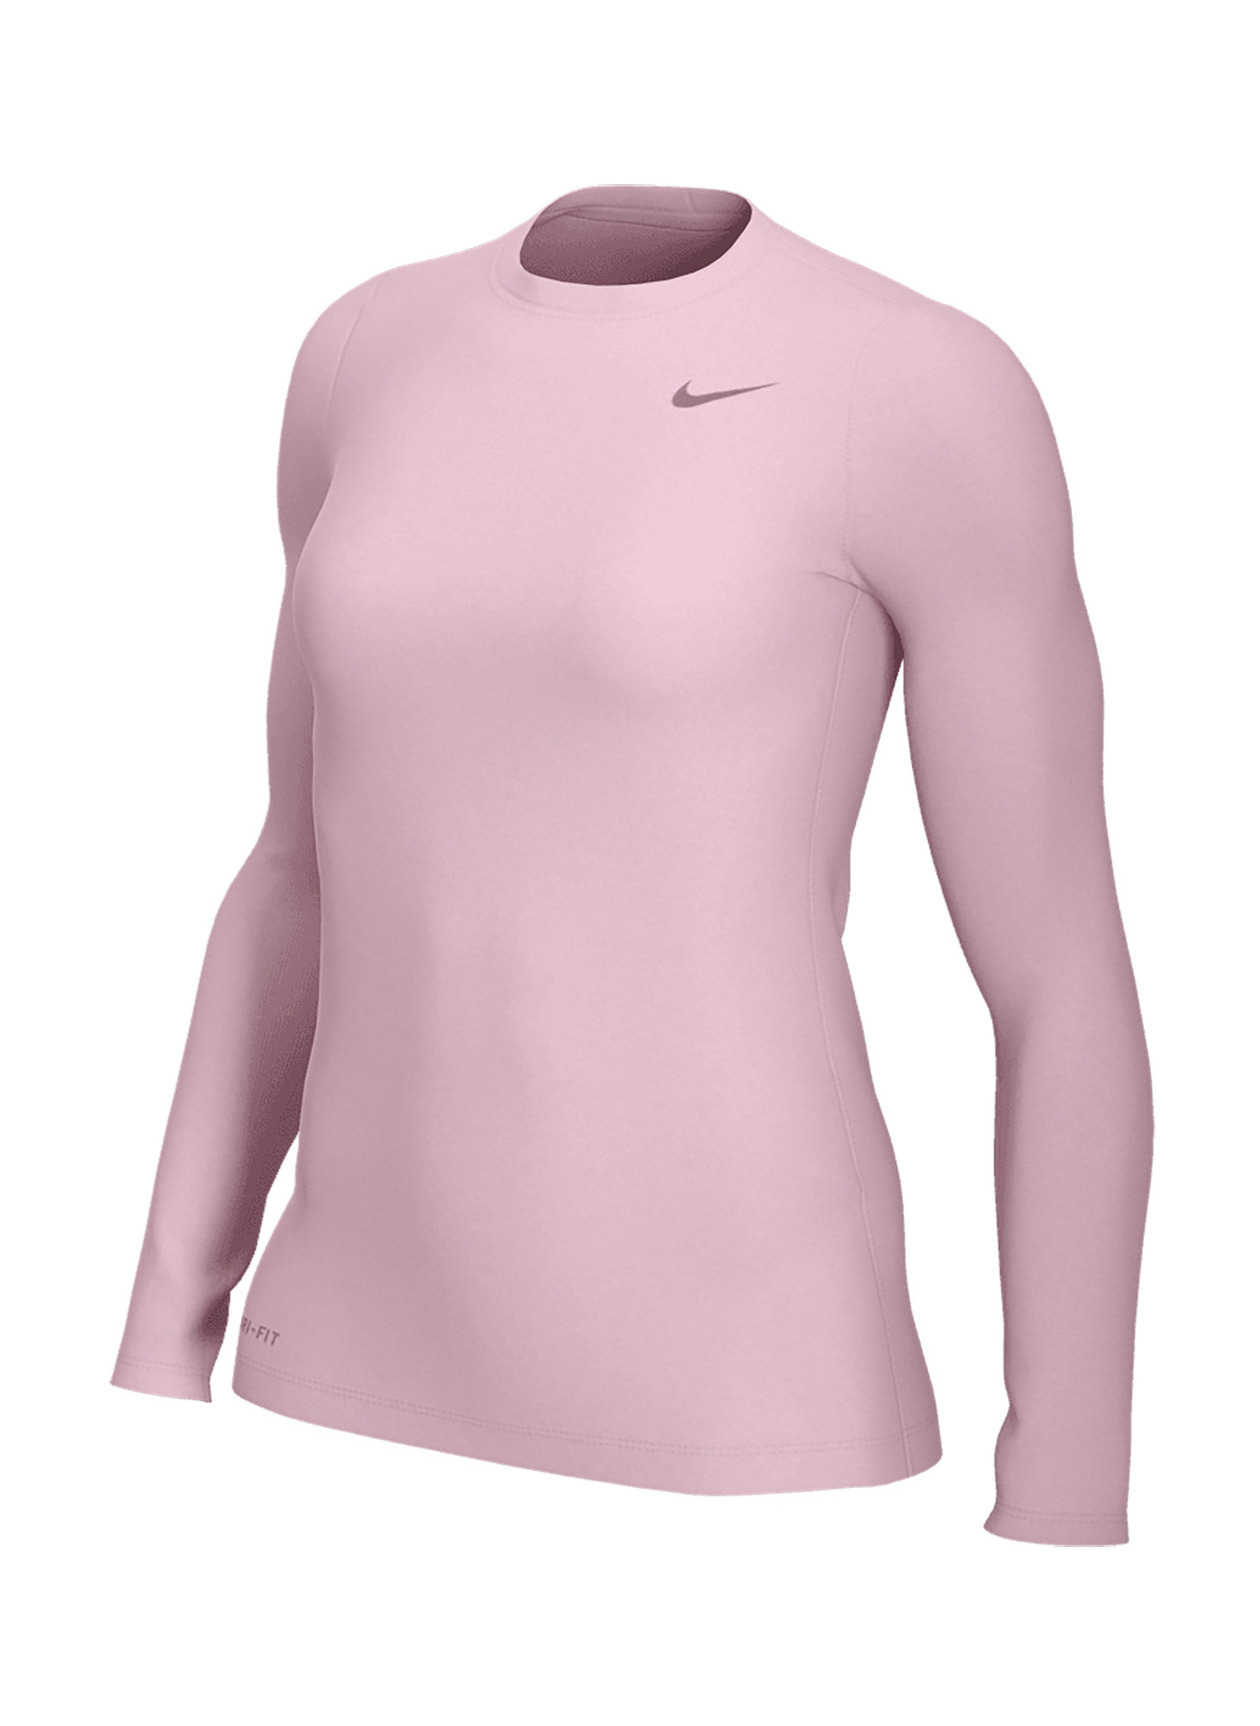 Nike Women's Shy Pink Legend Long-Sleeve Training T-Shirt